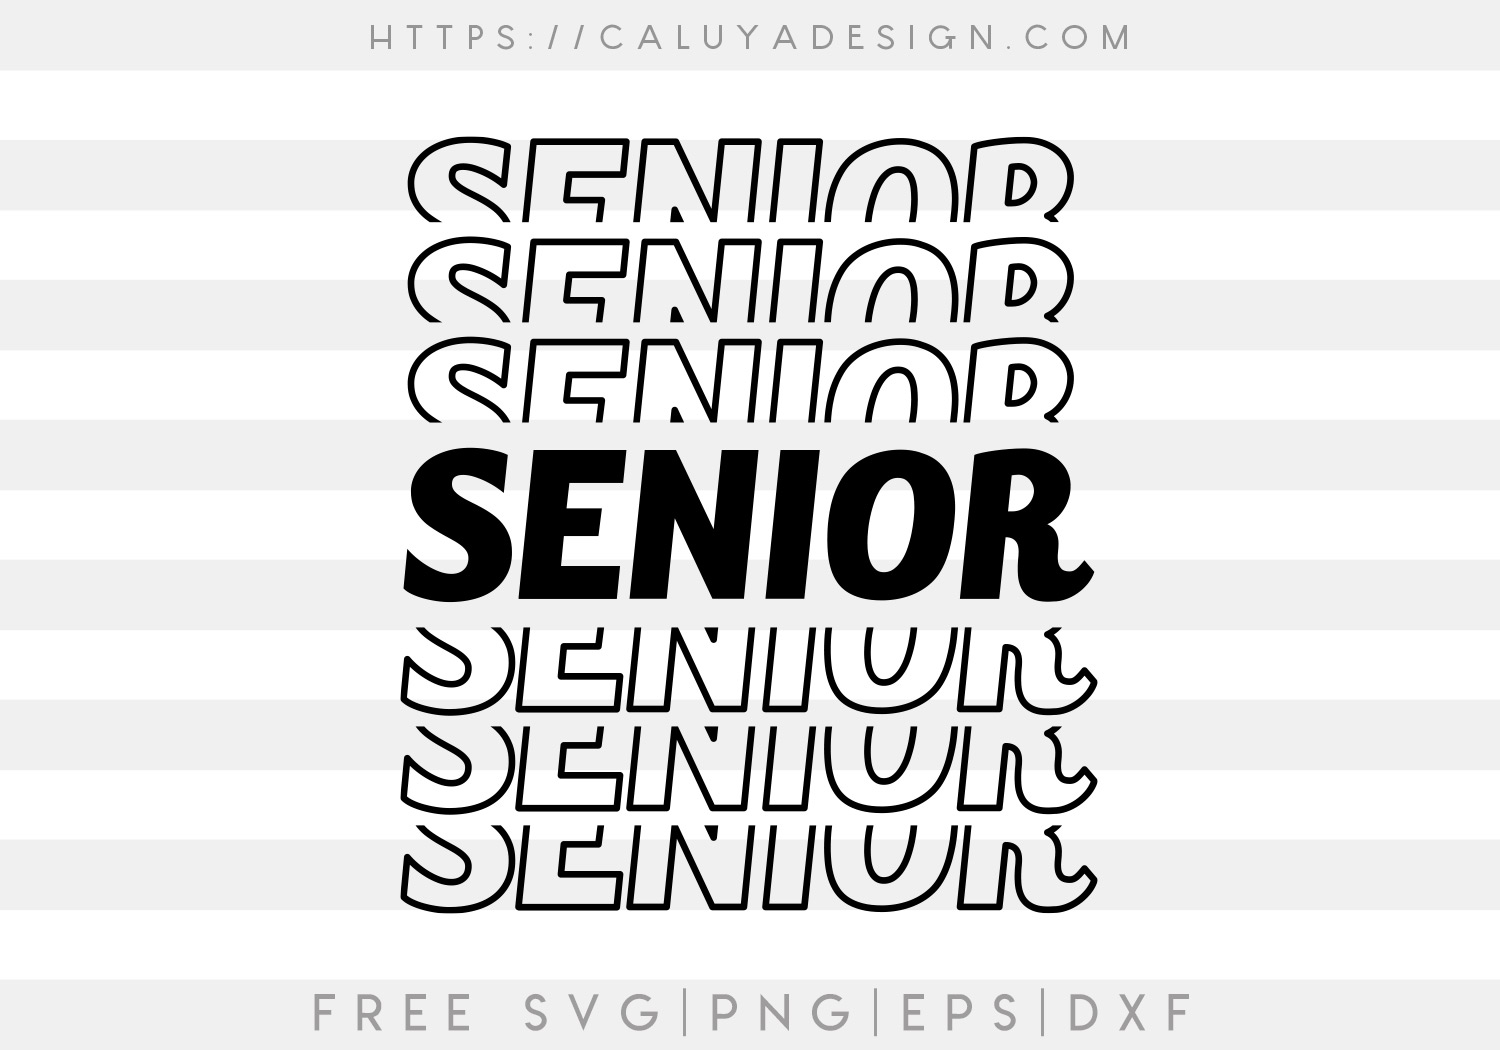 Free Senior SVG - CALUYA DESIGN